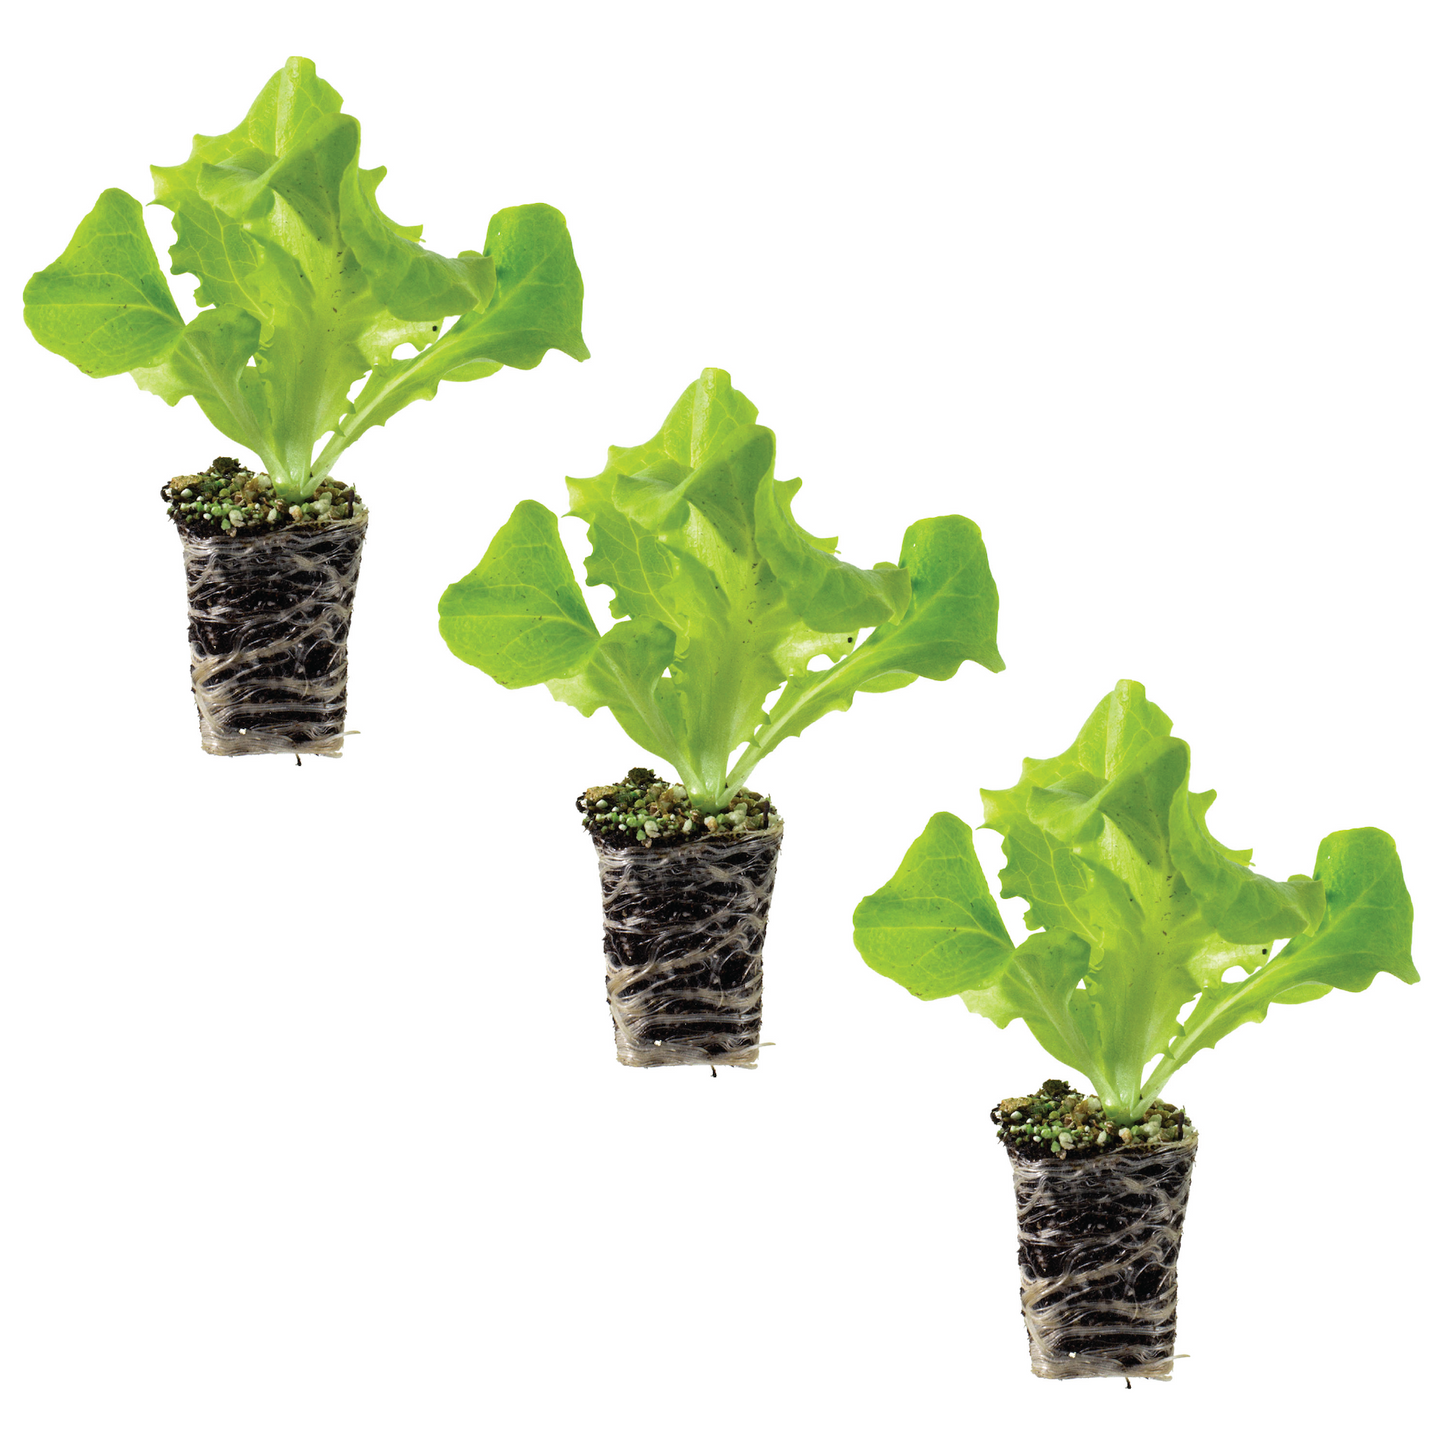 Lettuce Leaf Black Seeded Simpson Plantlings Live Baby Plants 1-3in., 3-Pack